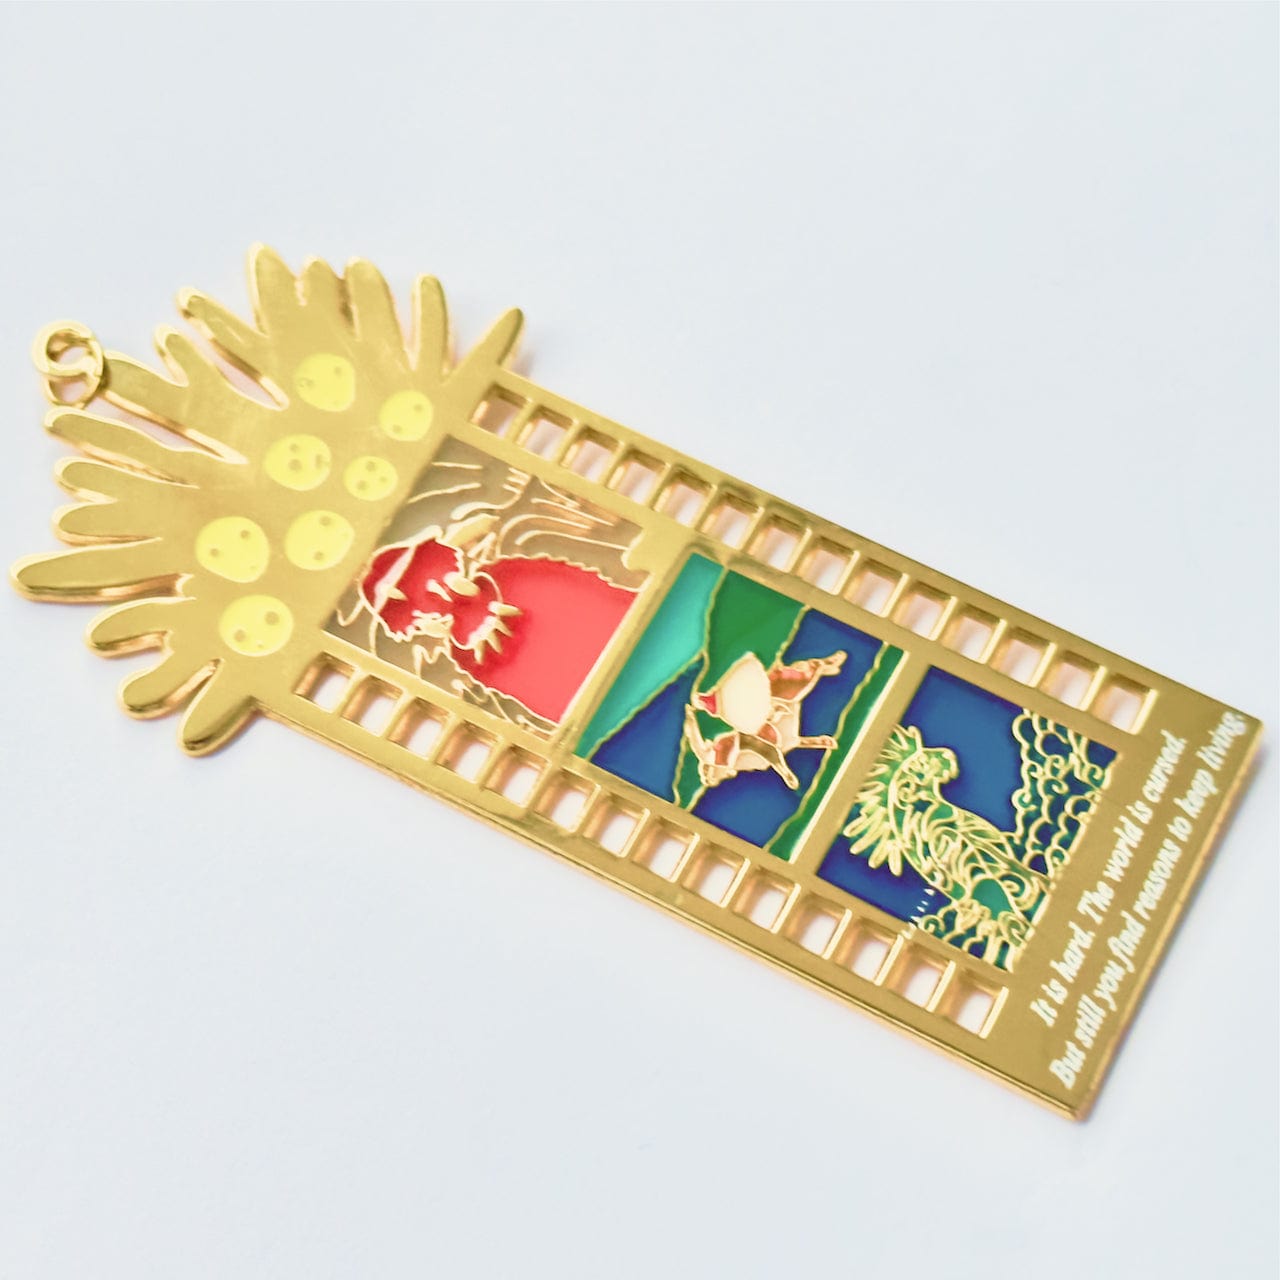 pinbuds Enamel pin "Water Spirits" Film Strip Pin (stainglass)